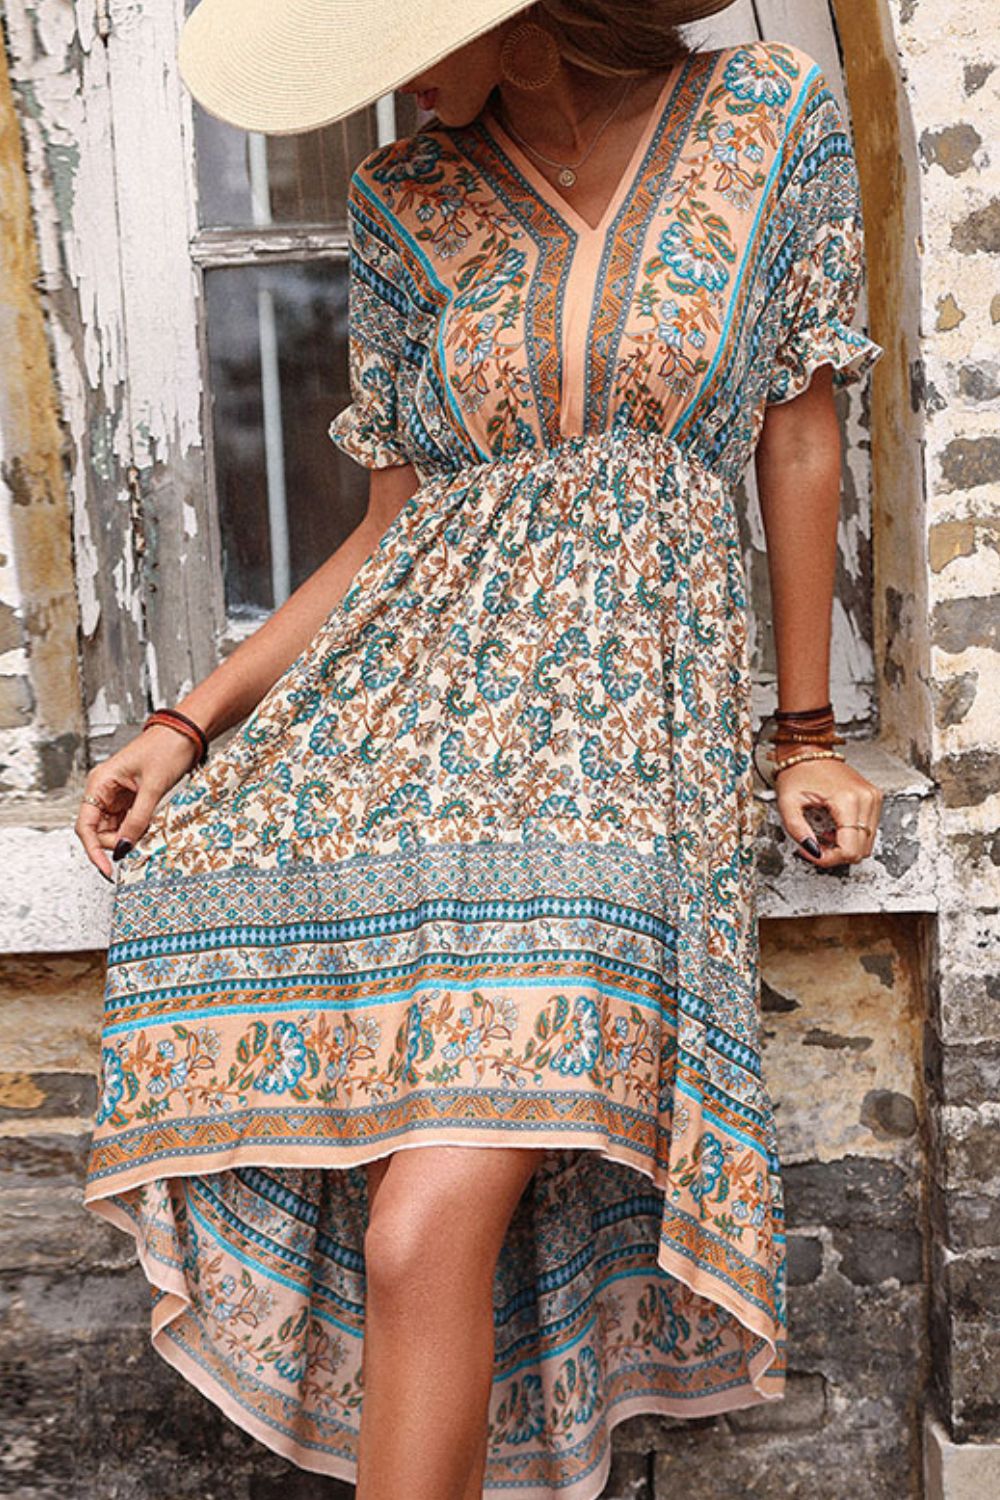 bohemian summer dresses